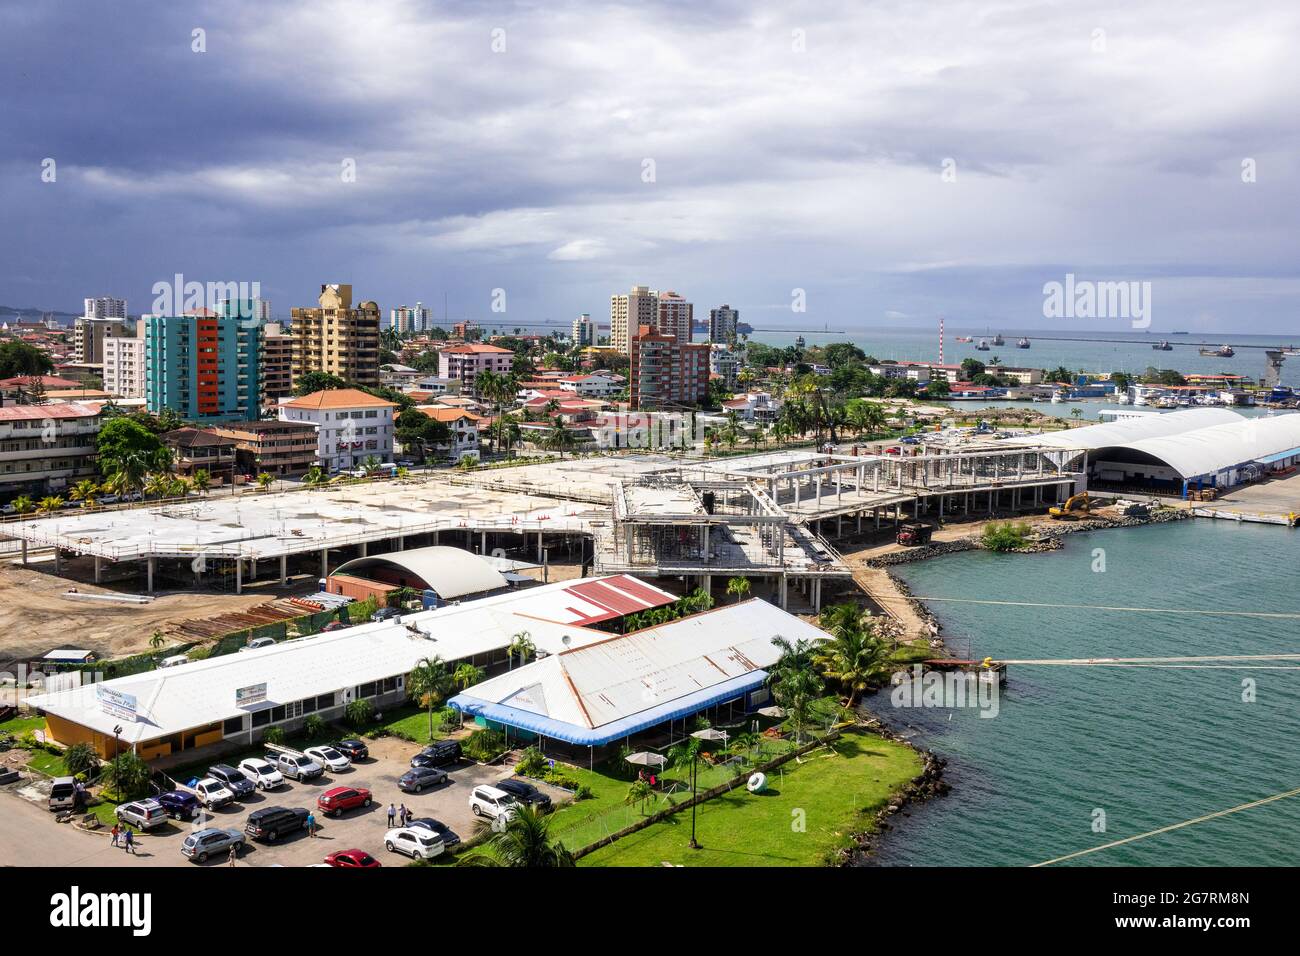 Agrandissement Construction du port de croisière de Colon Panama, entrée au canal de Panama novembre 2018 Banque D'Images